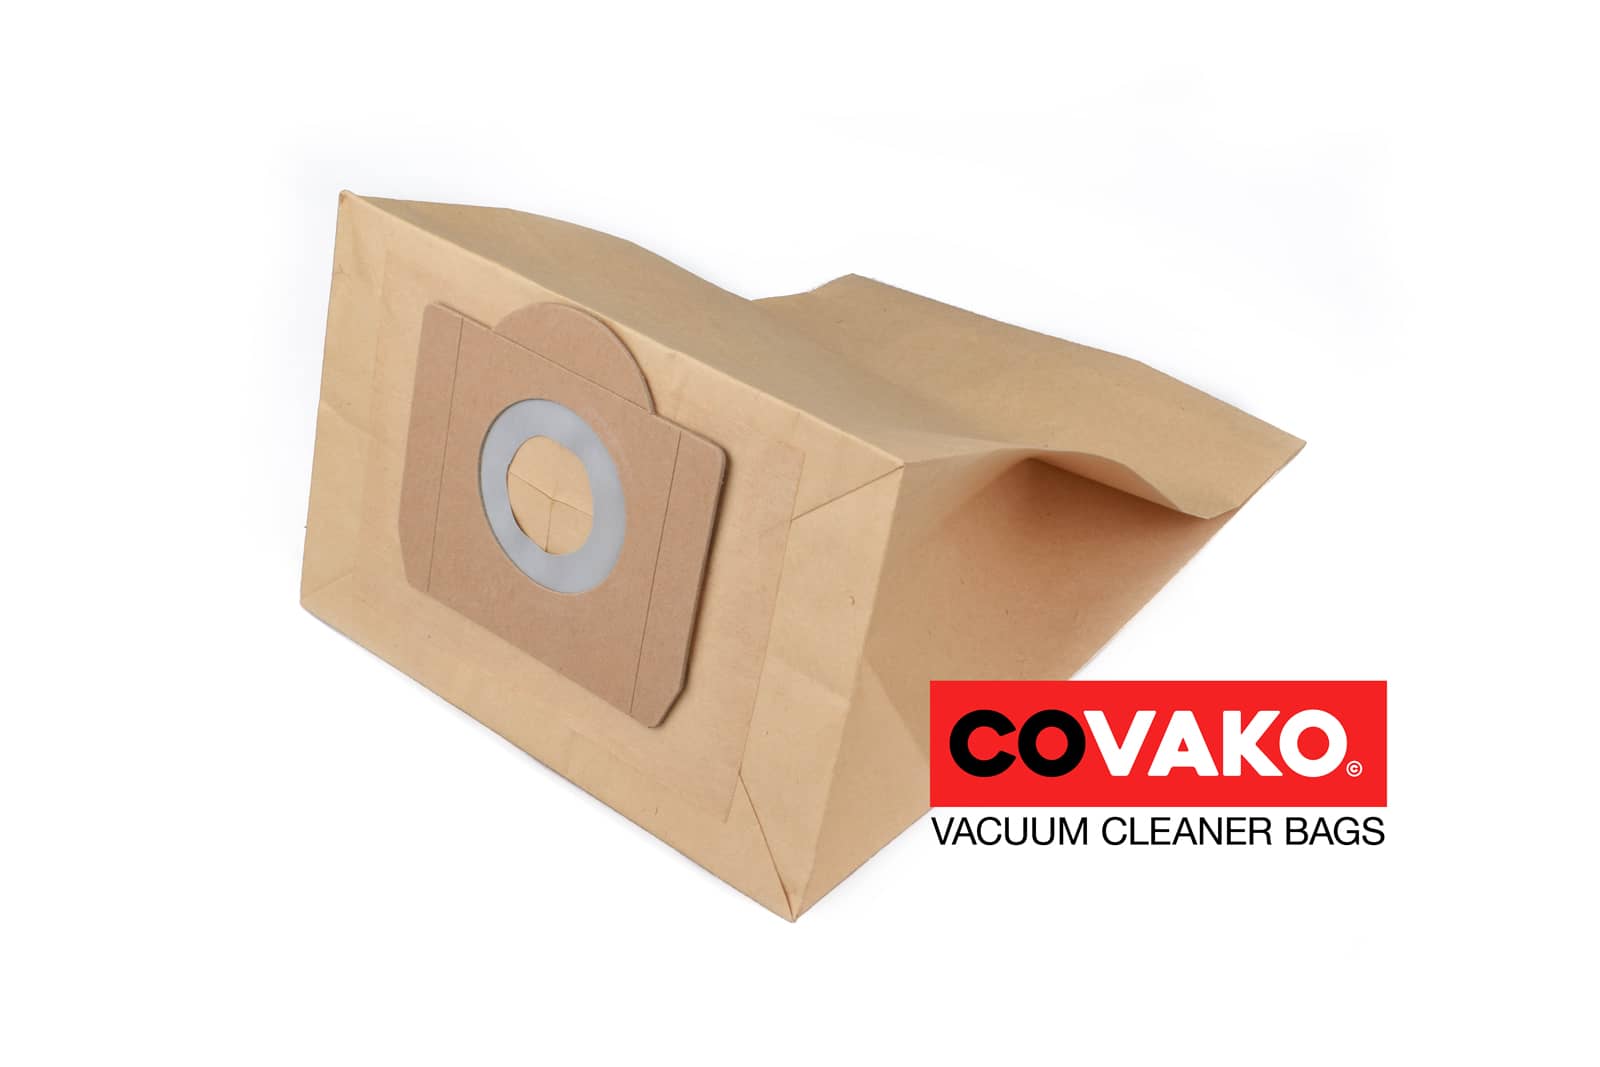 DiBo Windly 215 Inox IPC / Paper - DiBo vacuum cleaner bags